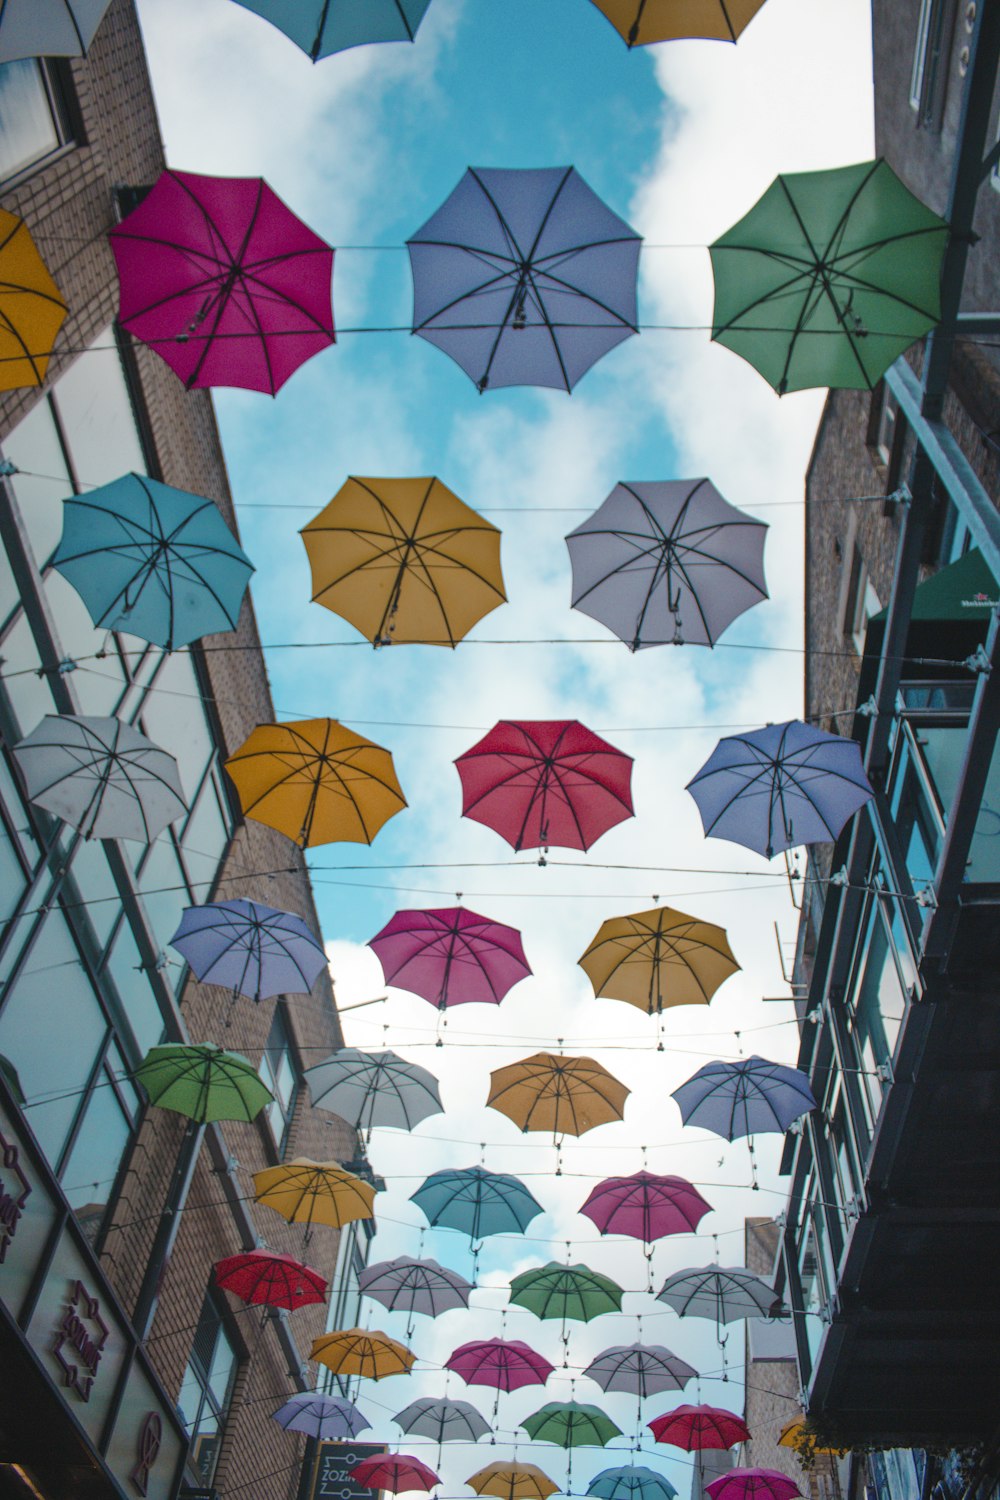 floating umbrellas